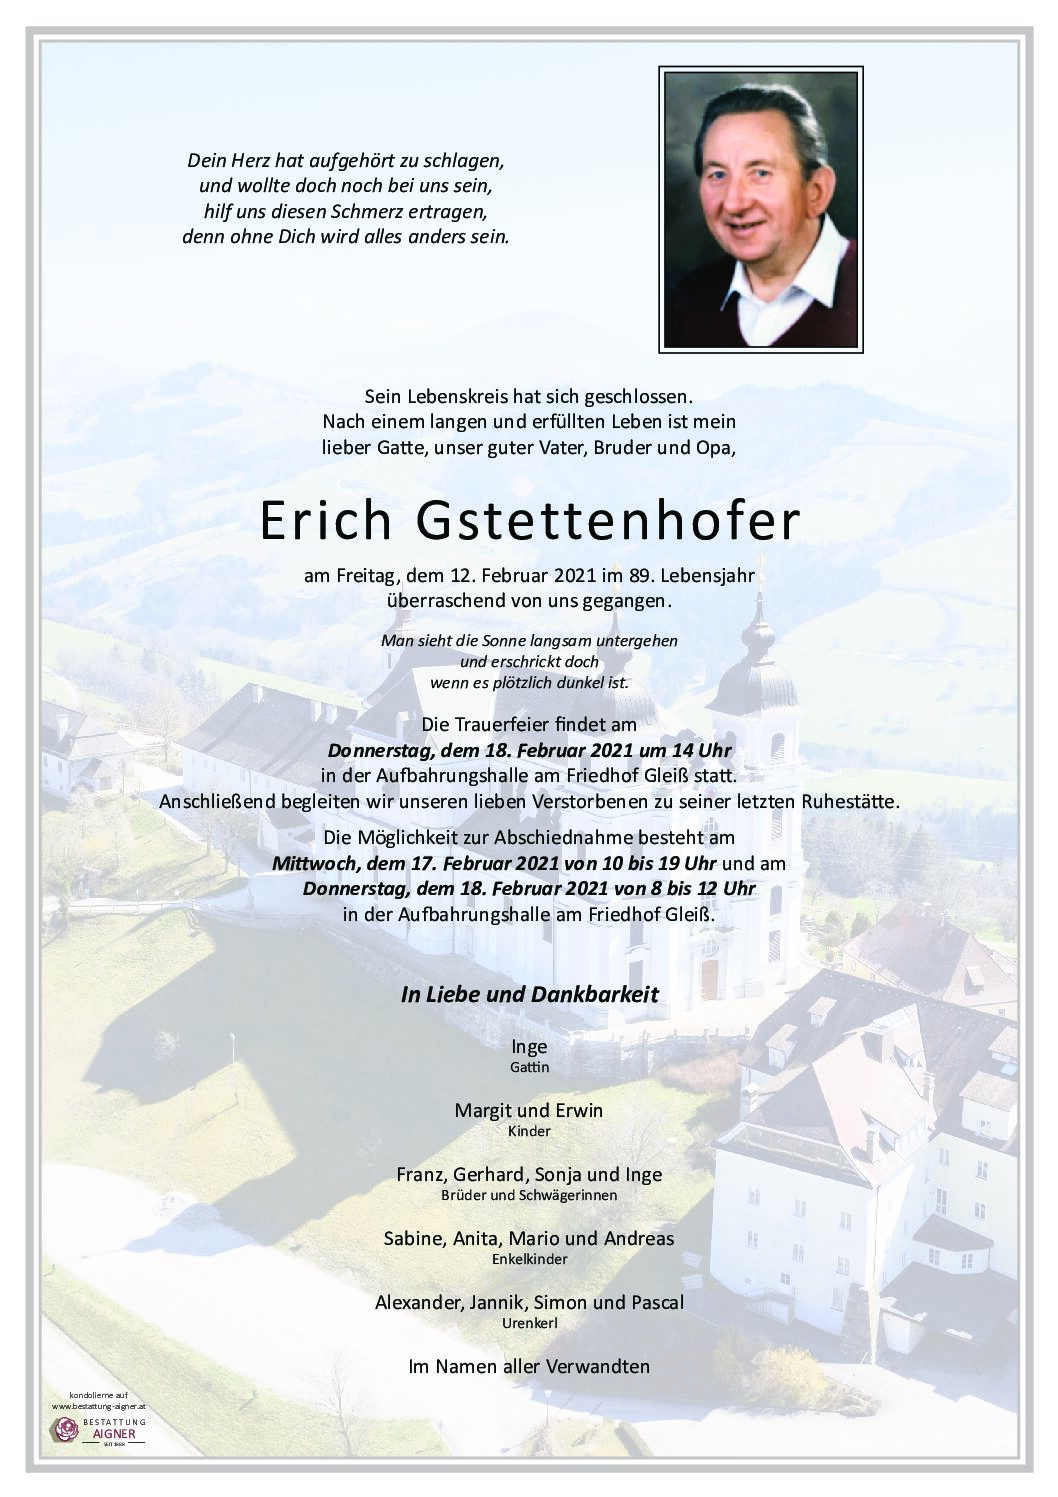 Erich Gstettenhofer